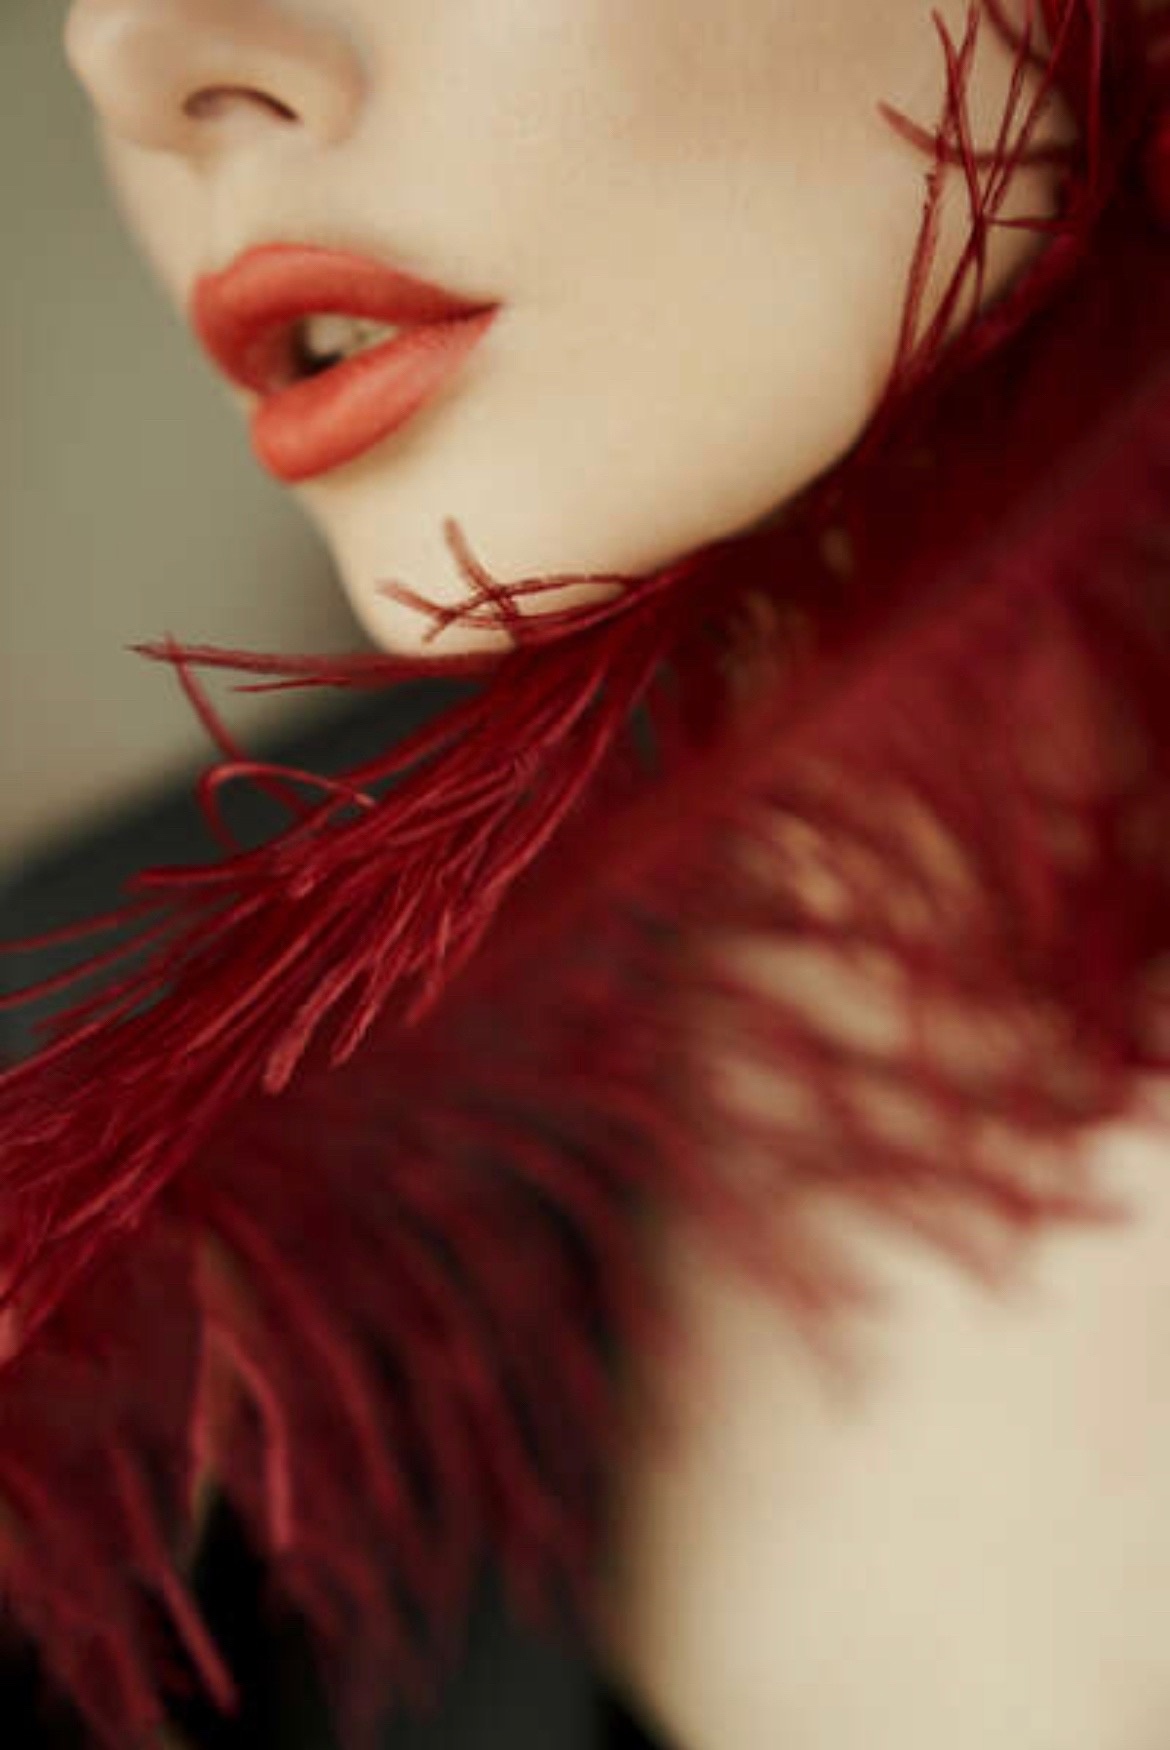 губы, перо, красный, девушка, шея, скулы, запах, аромат, нежность, Дарья Комарова